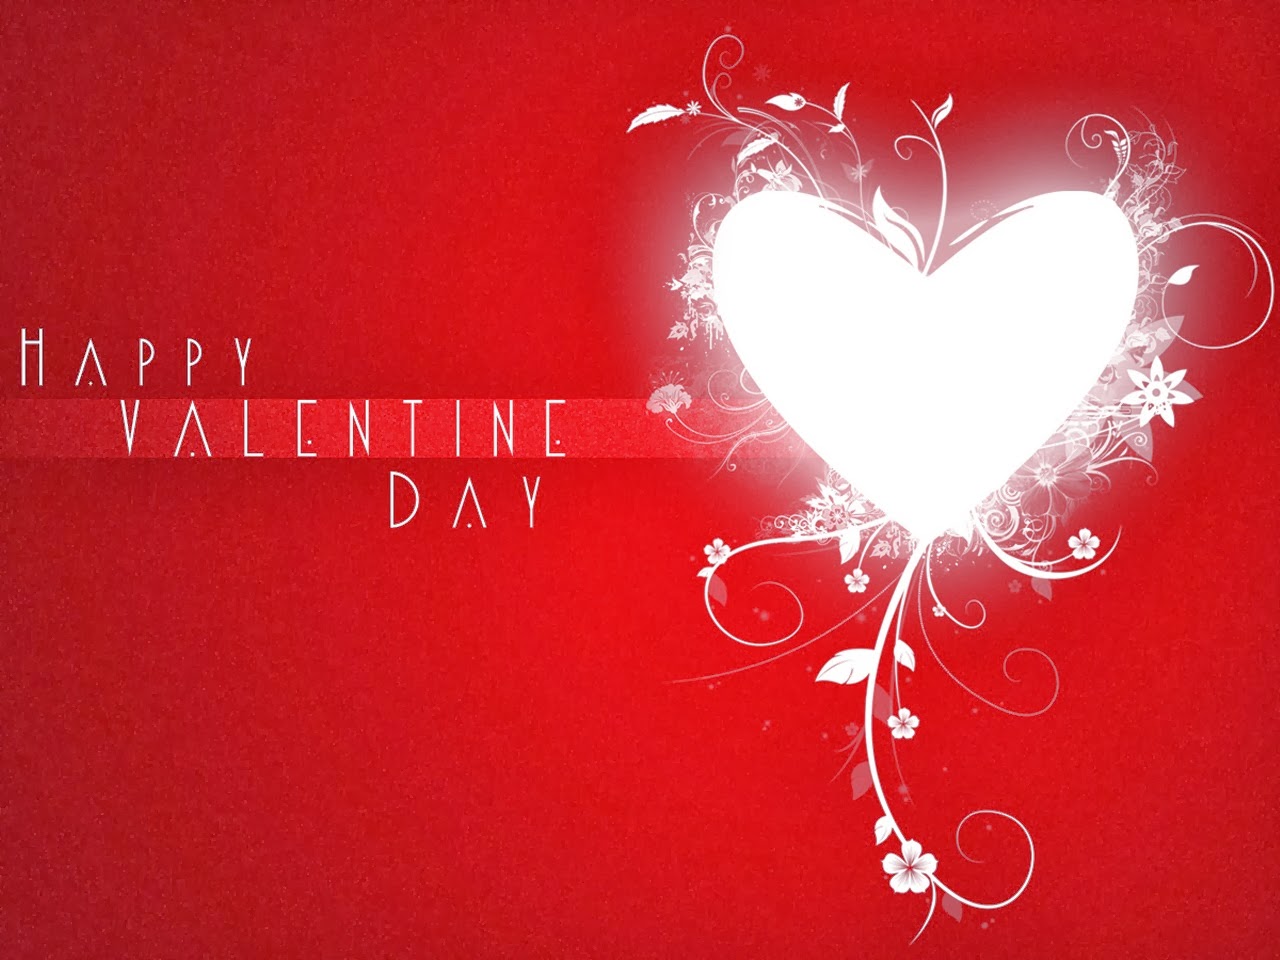 felice giorno di san valentino wallpaper hd,cuore,amore,san valentino,rosso,testo